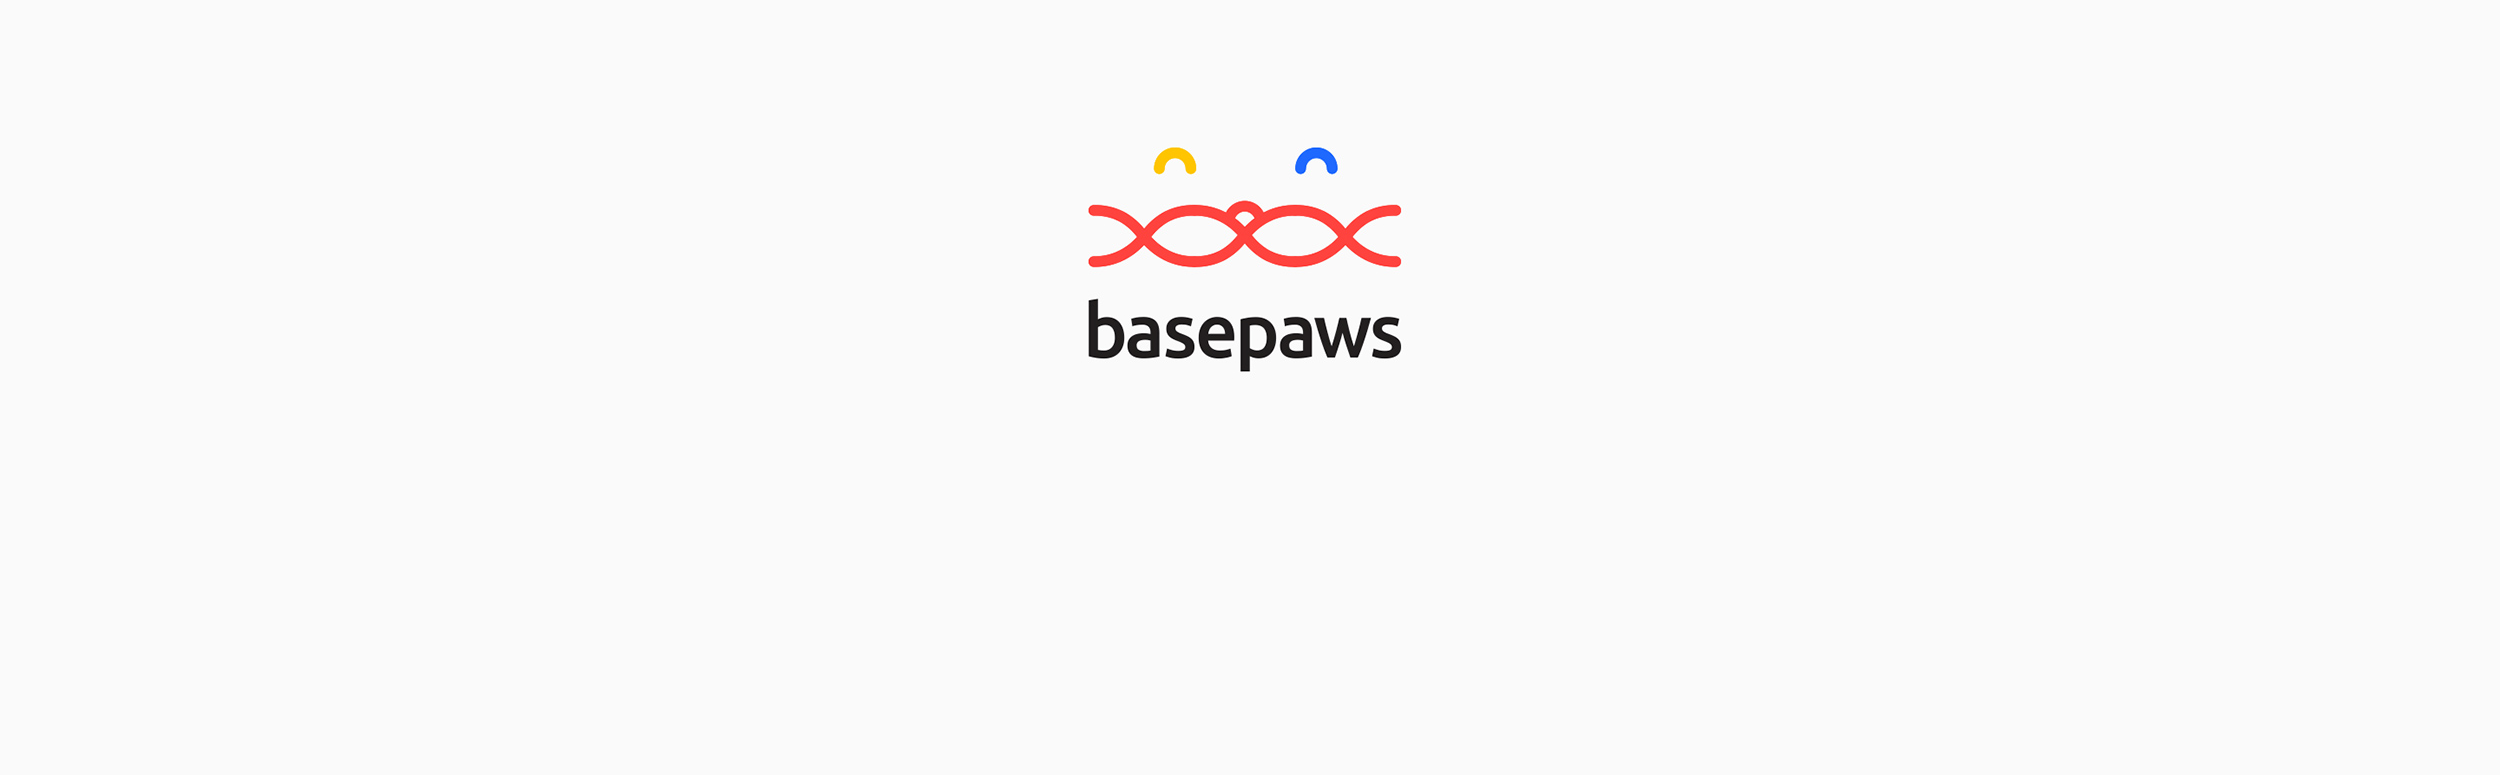 basepaws_1.png